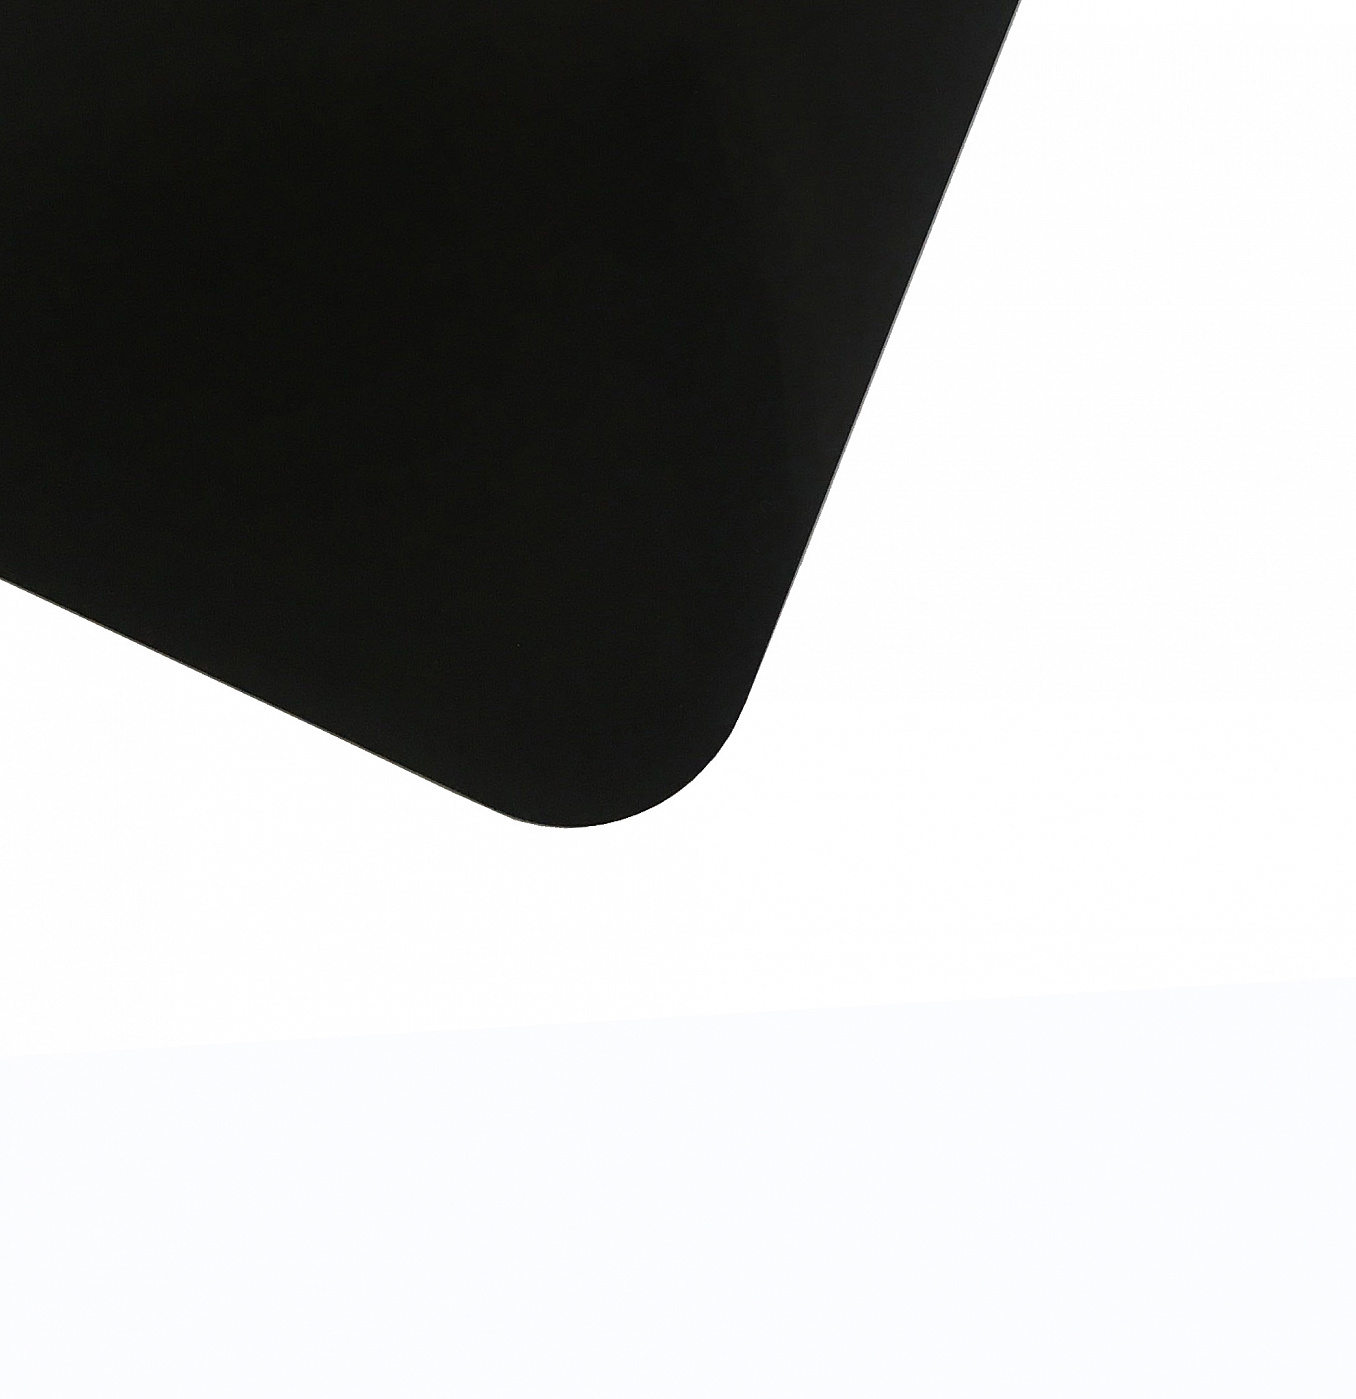 Планшет для пленэра из оргстекла 3 мм, под лист размера А5, цвет черный Dec-9082009